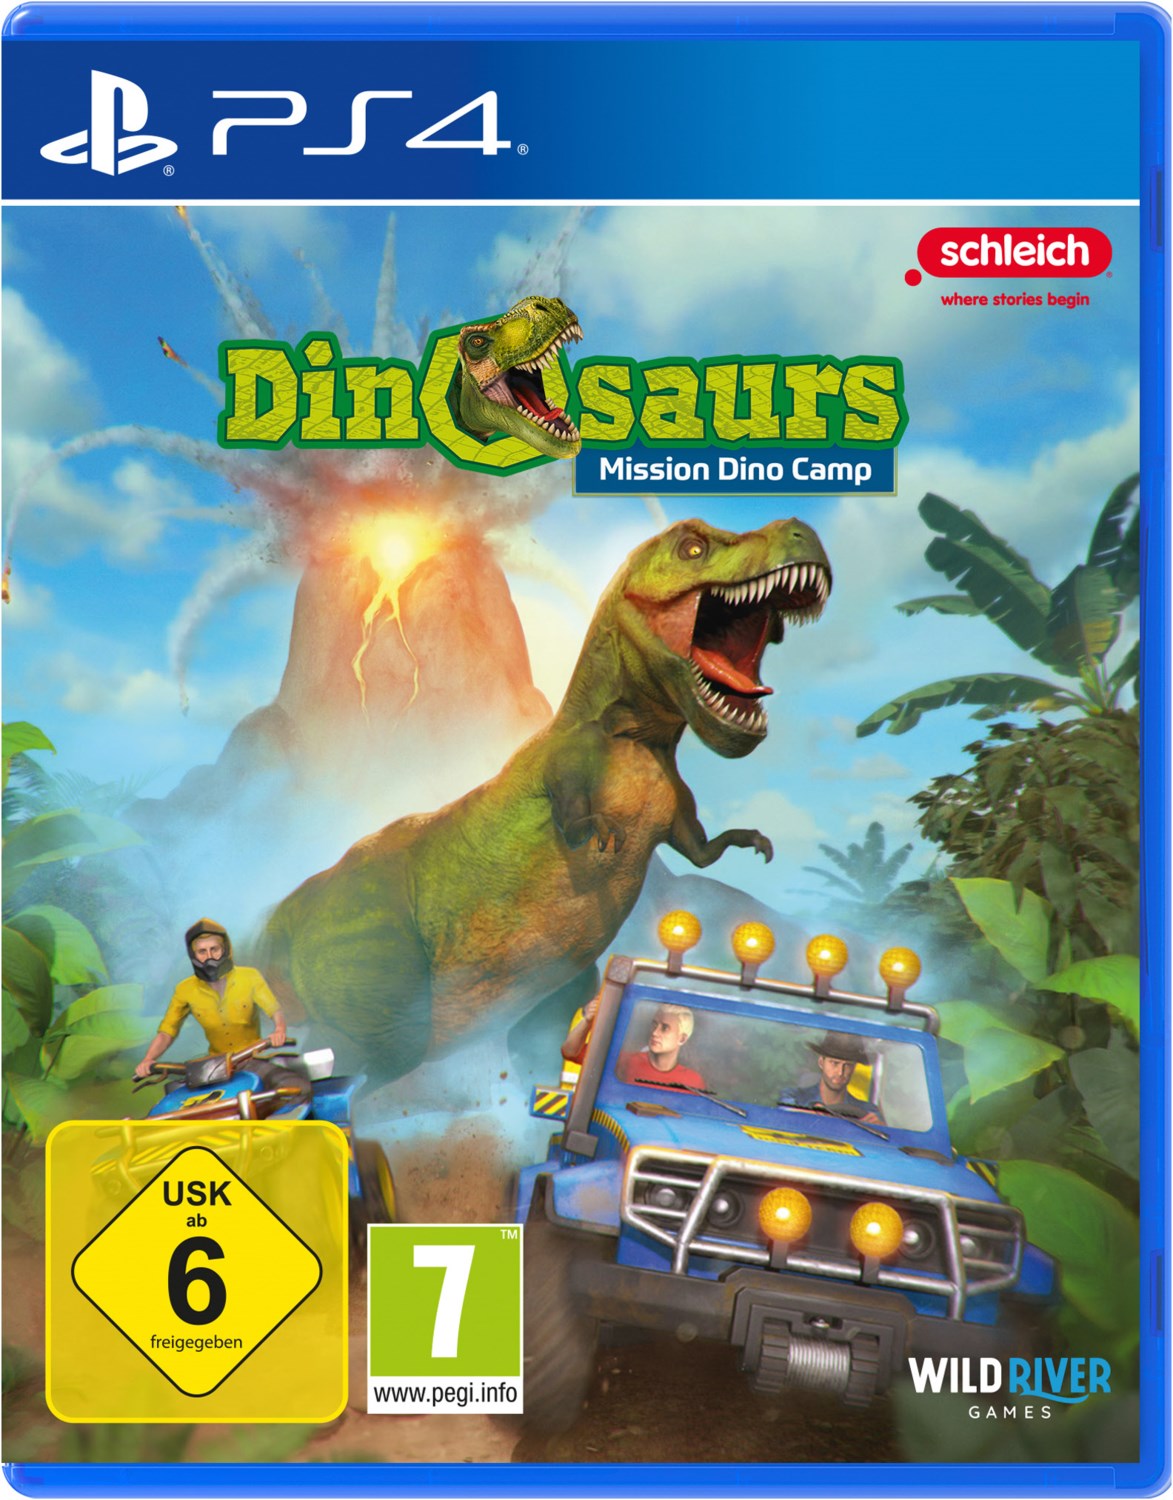 PS4 Schleich Dinosaurs: Mission Dino Camp von Software Pyramide